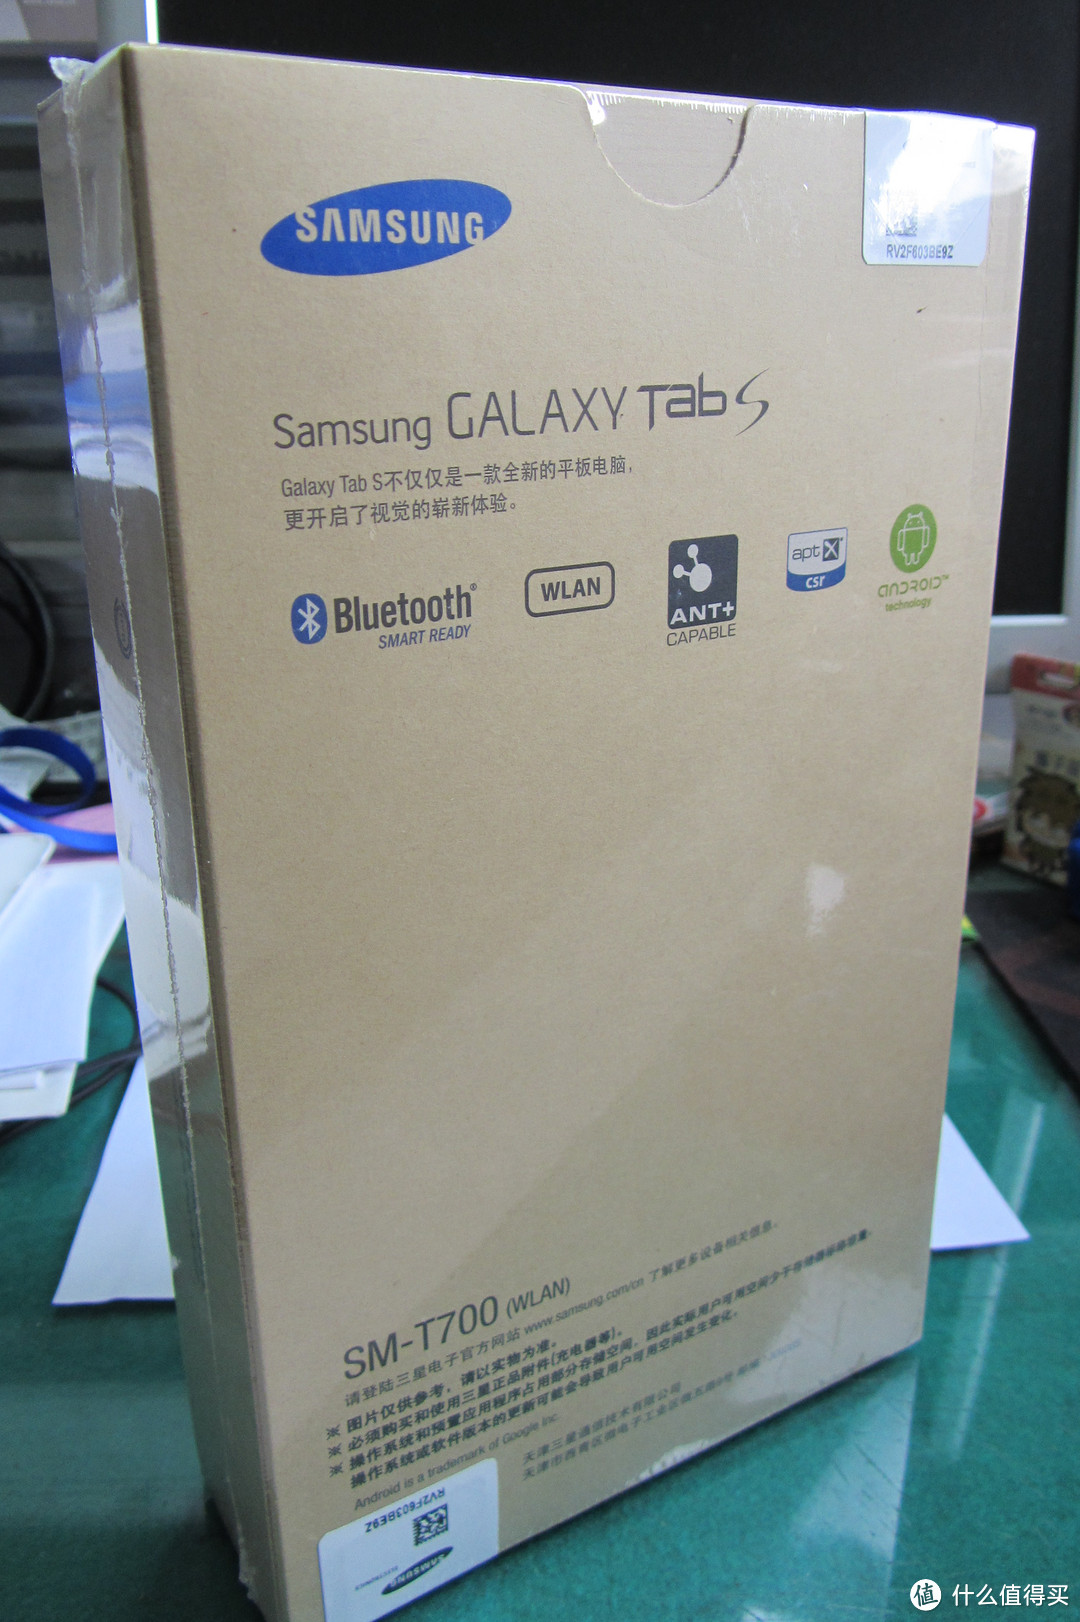 三星脑残粉的 国行 Samsung三星 GALAXY TabS WLAN版 T700 入“手”小记